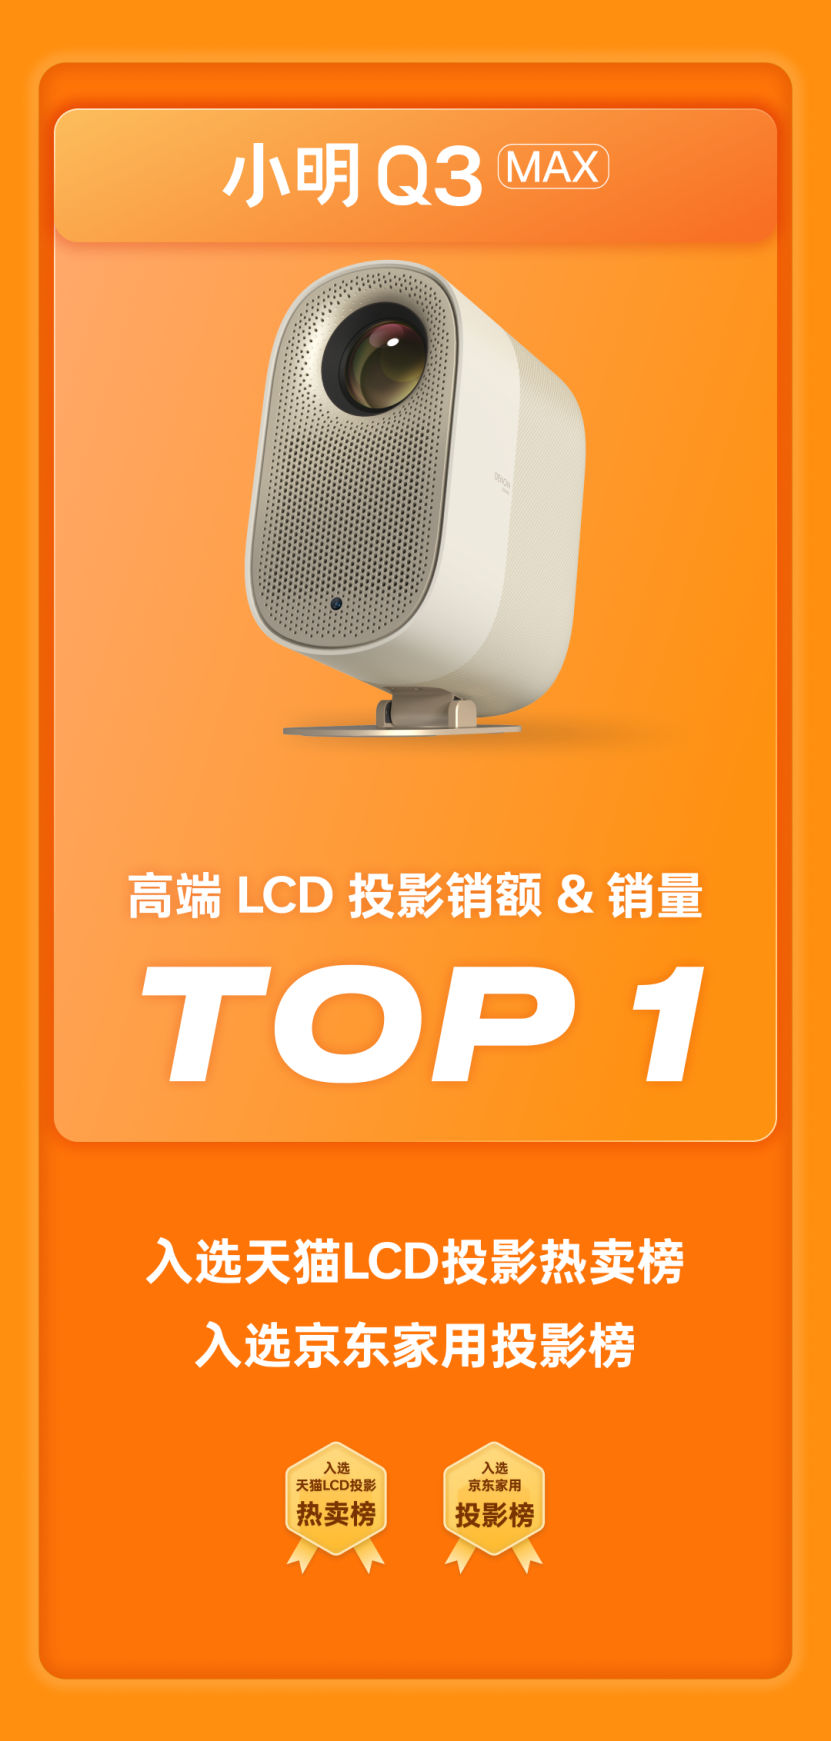 小明投影引领LCD投影市场爆发  斩获618全渠道LCD投影销额与销量TOP1